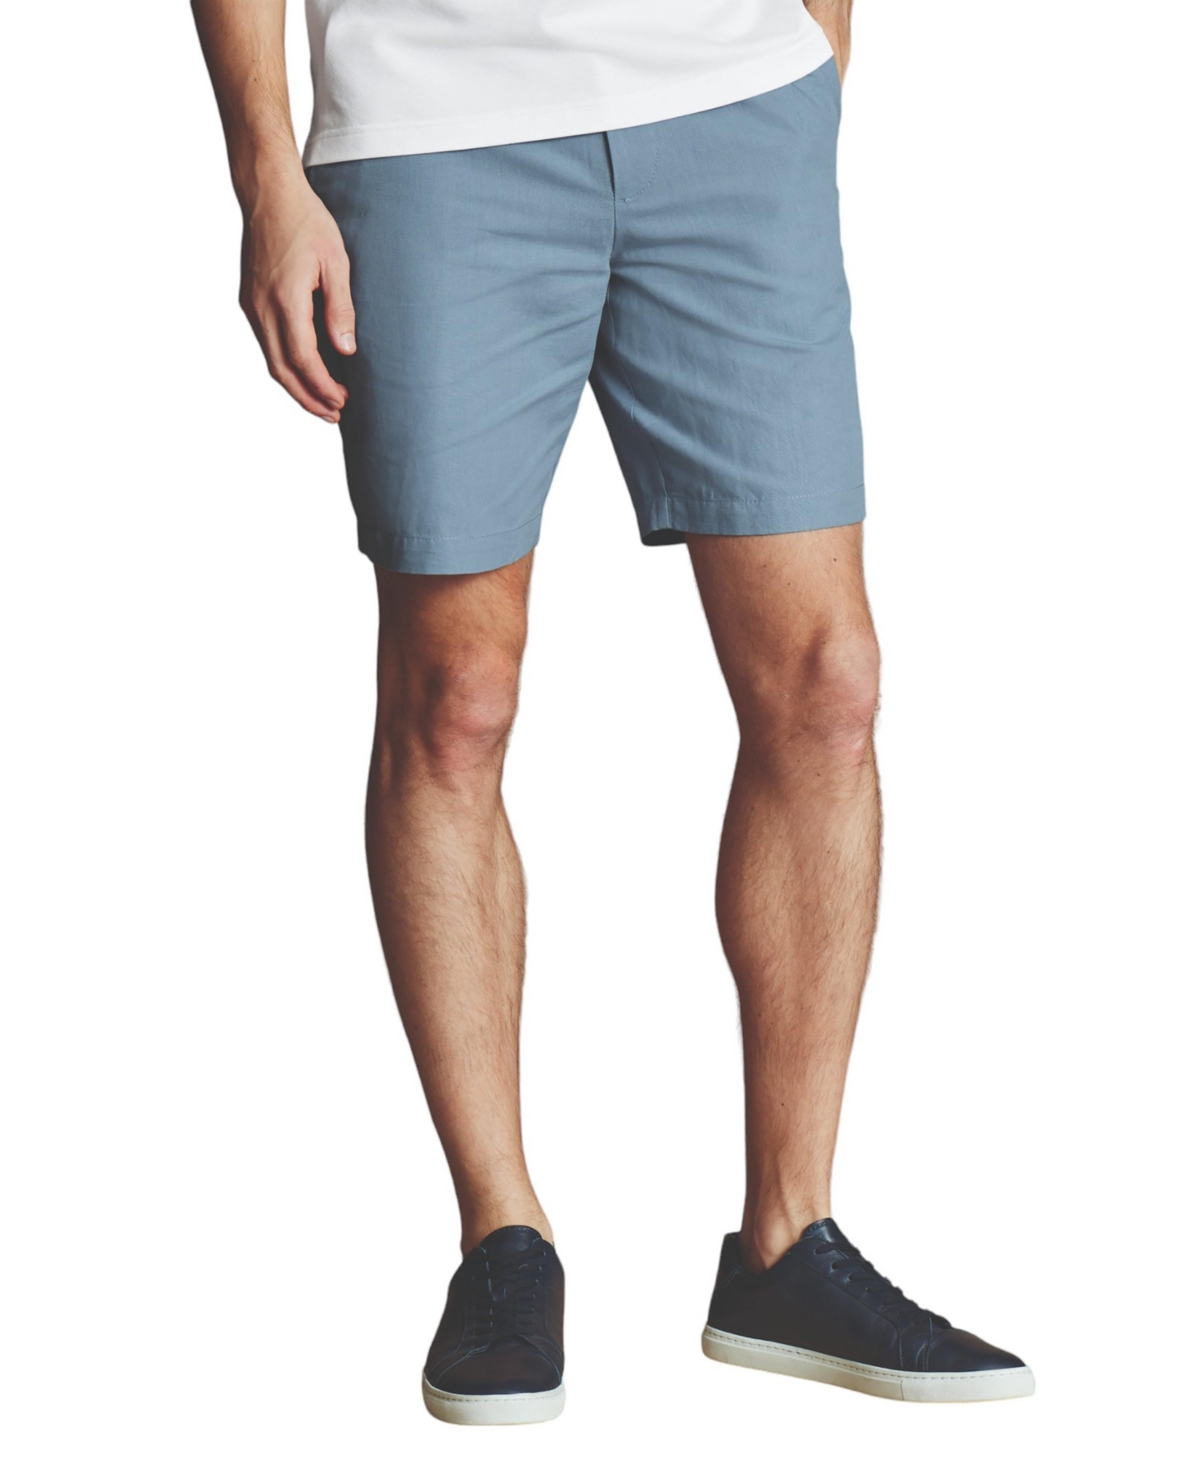 Men's Cotton Linen Shorts - Mid blue